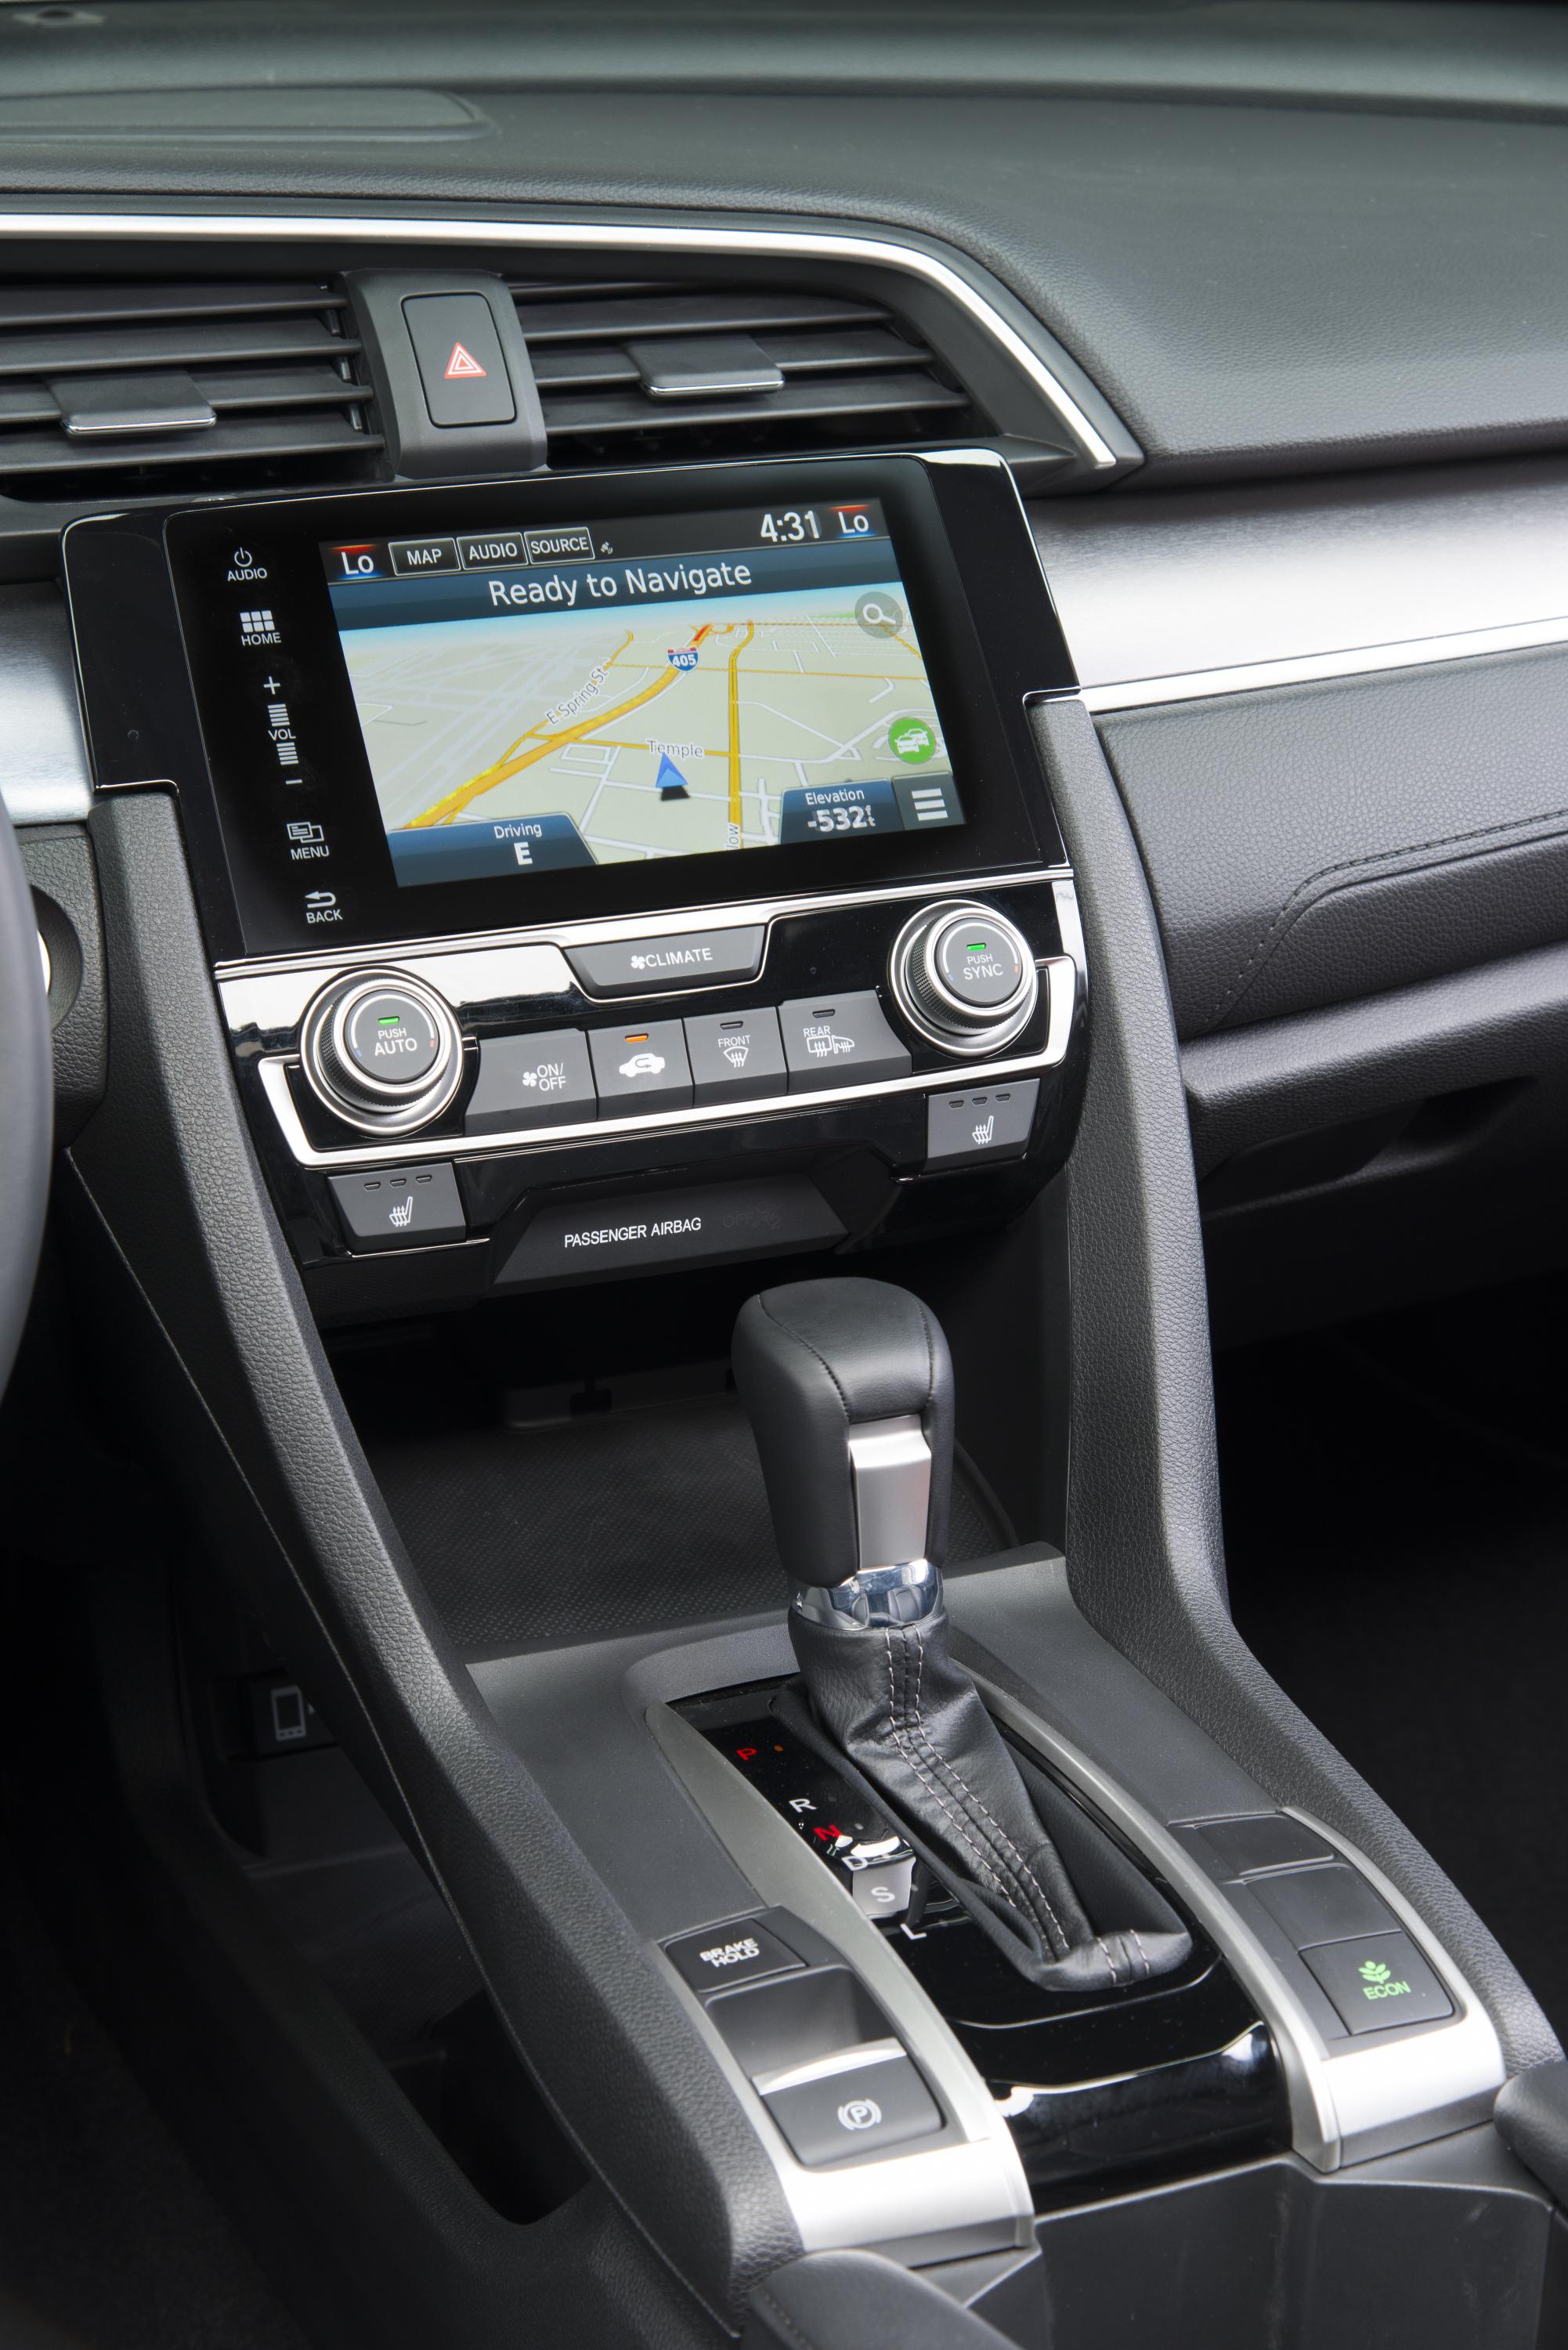 2016 Honda Civic Sedan center console unveiled